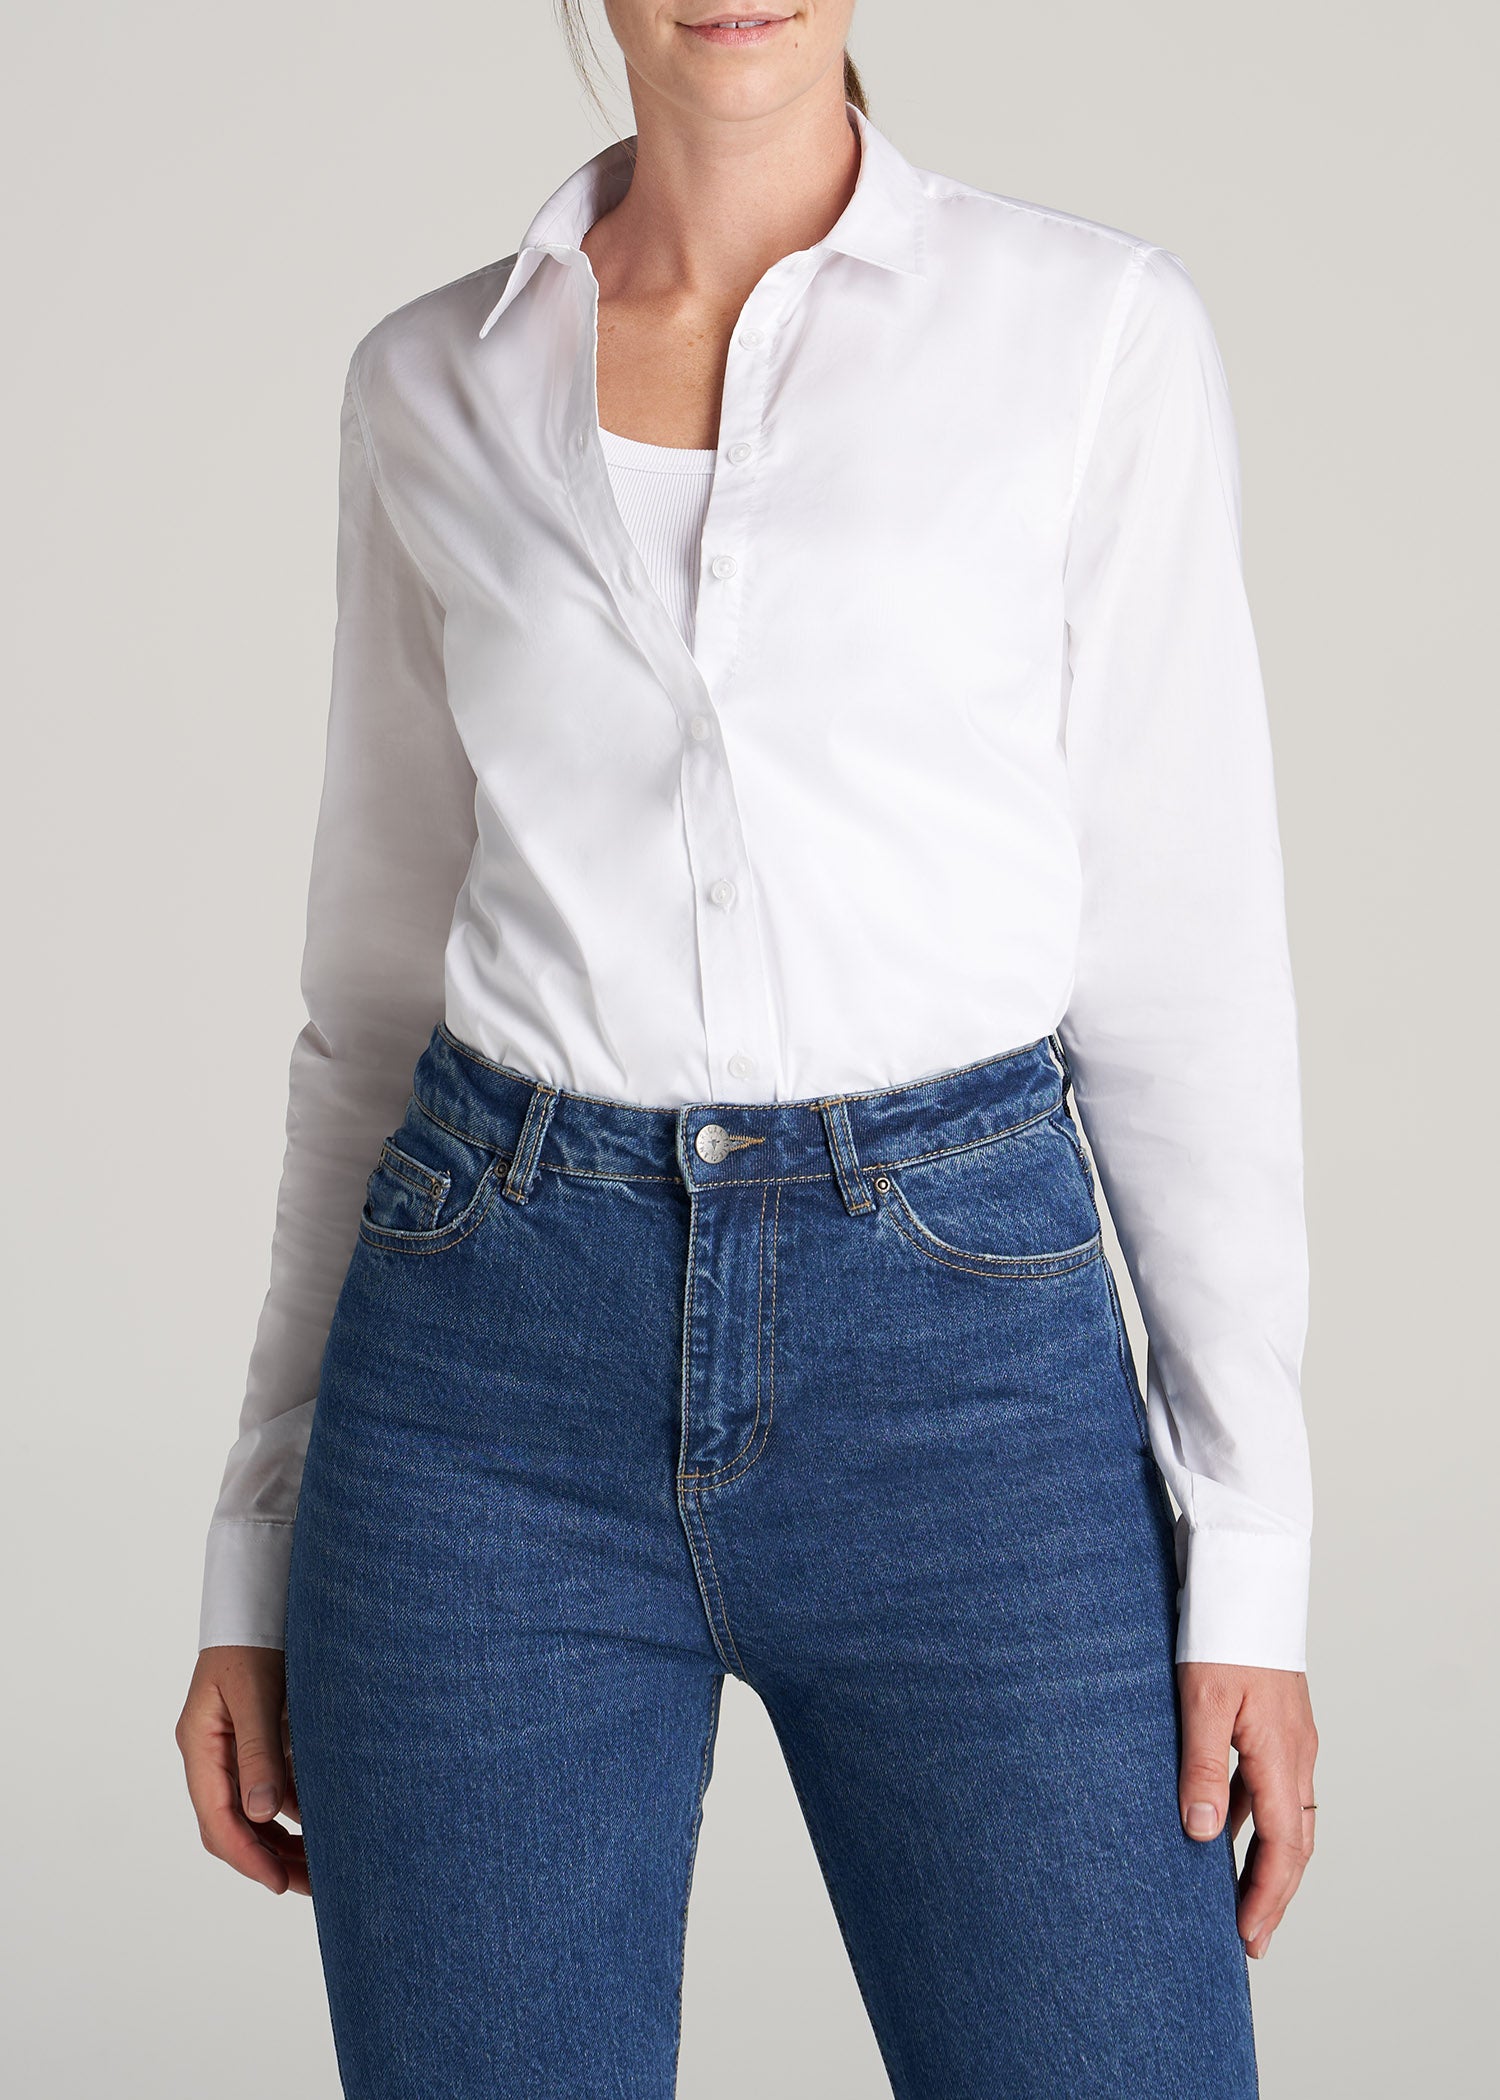 Women's Tall White Shirt: Women's Tall Button-Up Dress Shirt